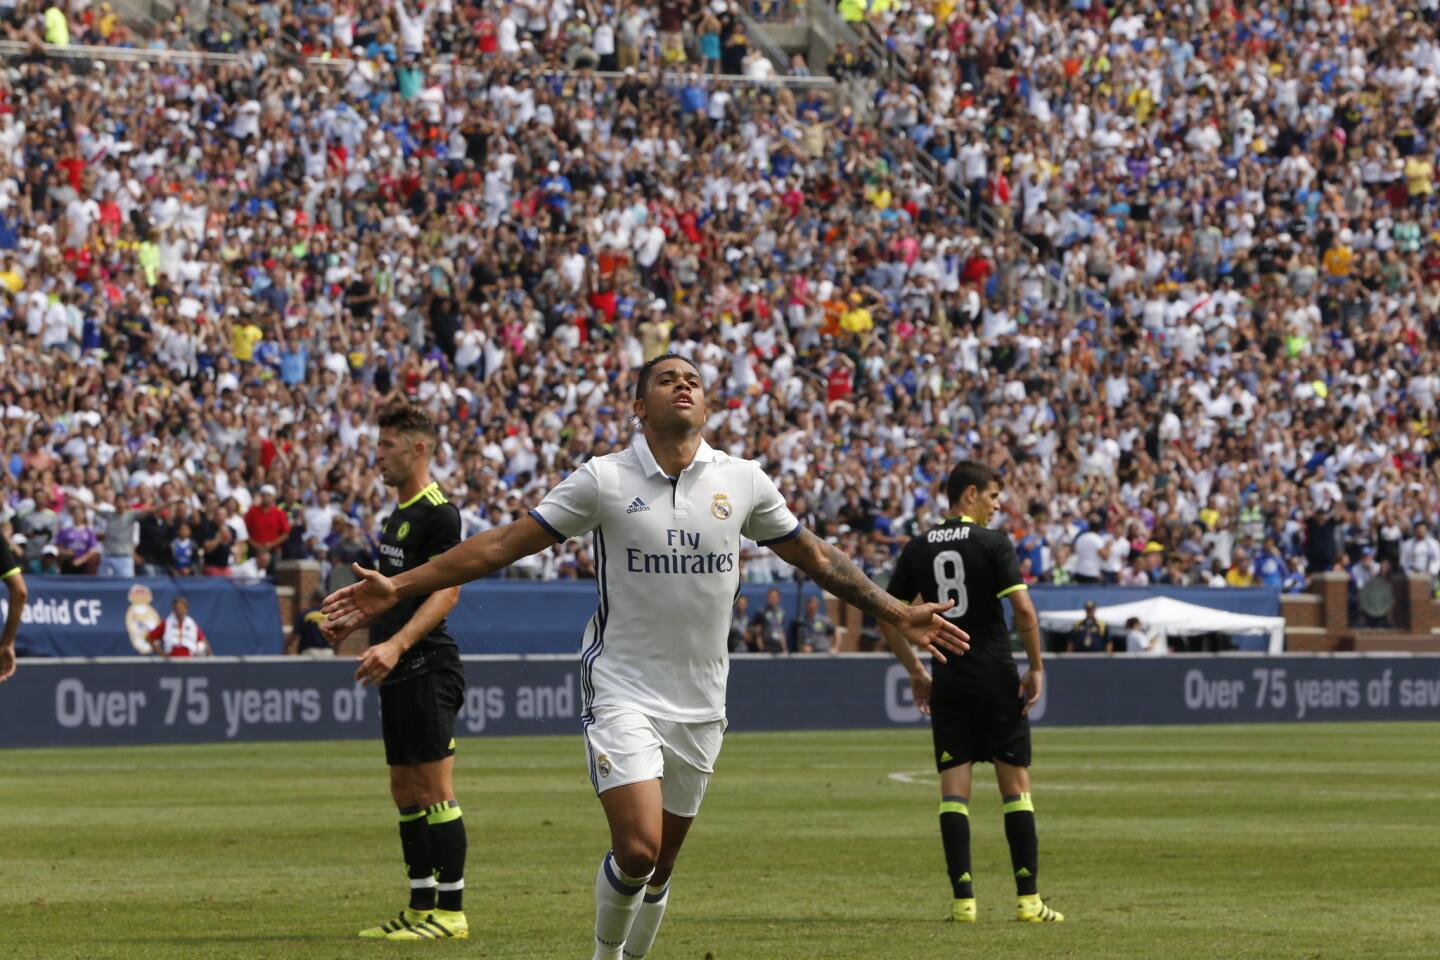 El jugador Mariano Díaz del Real Madrid celebra la anotación de un gol ante el Chelsea durante un partido entre el Real Madrid y el Chelsea FC del International Champions Cup que se realiza en el estadio Michigan en Ann Arbos, Michigan.